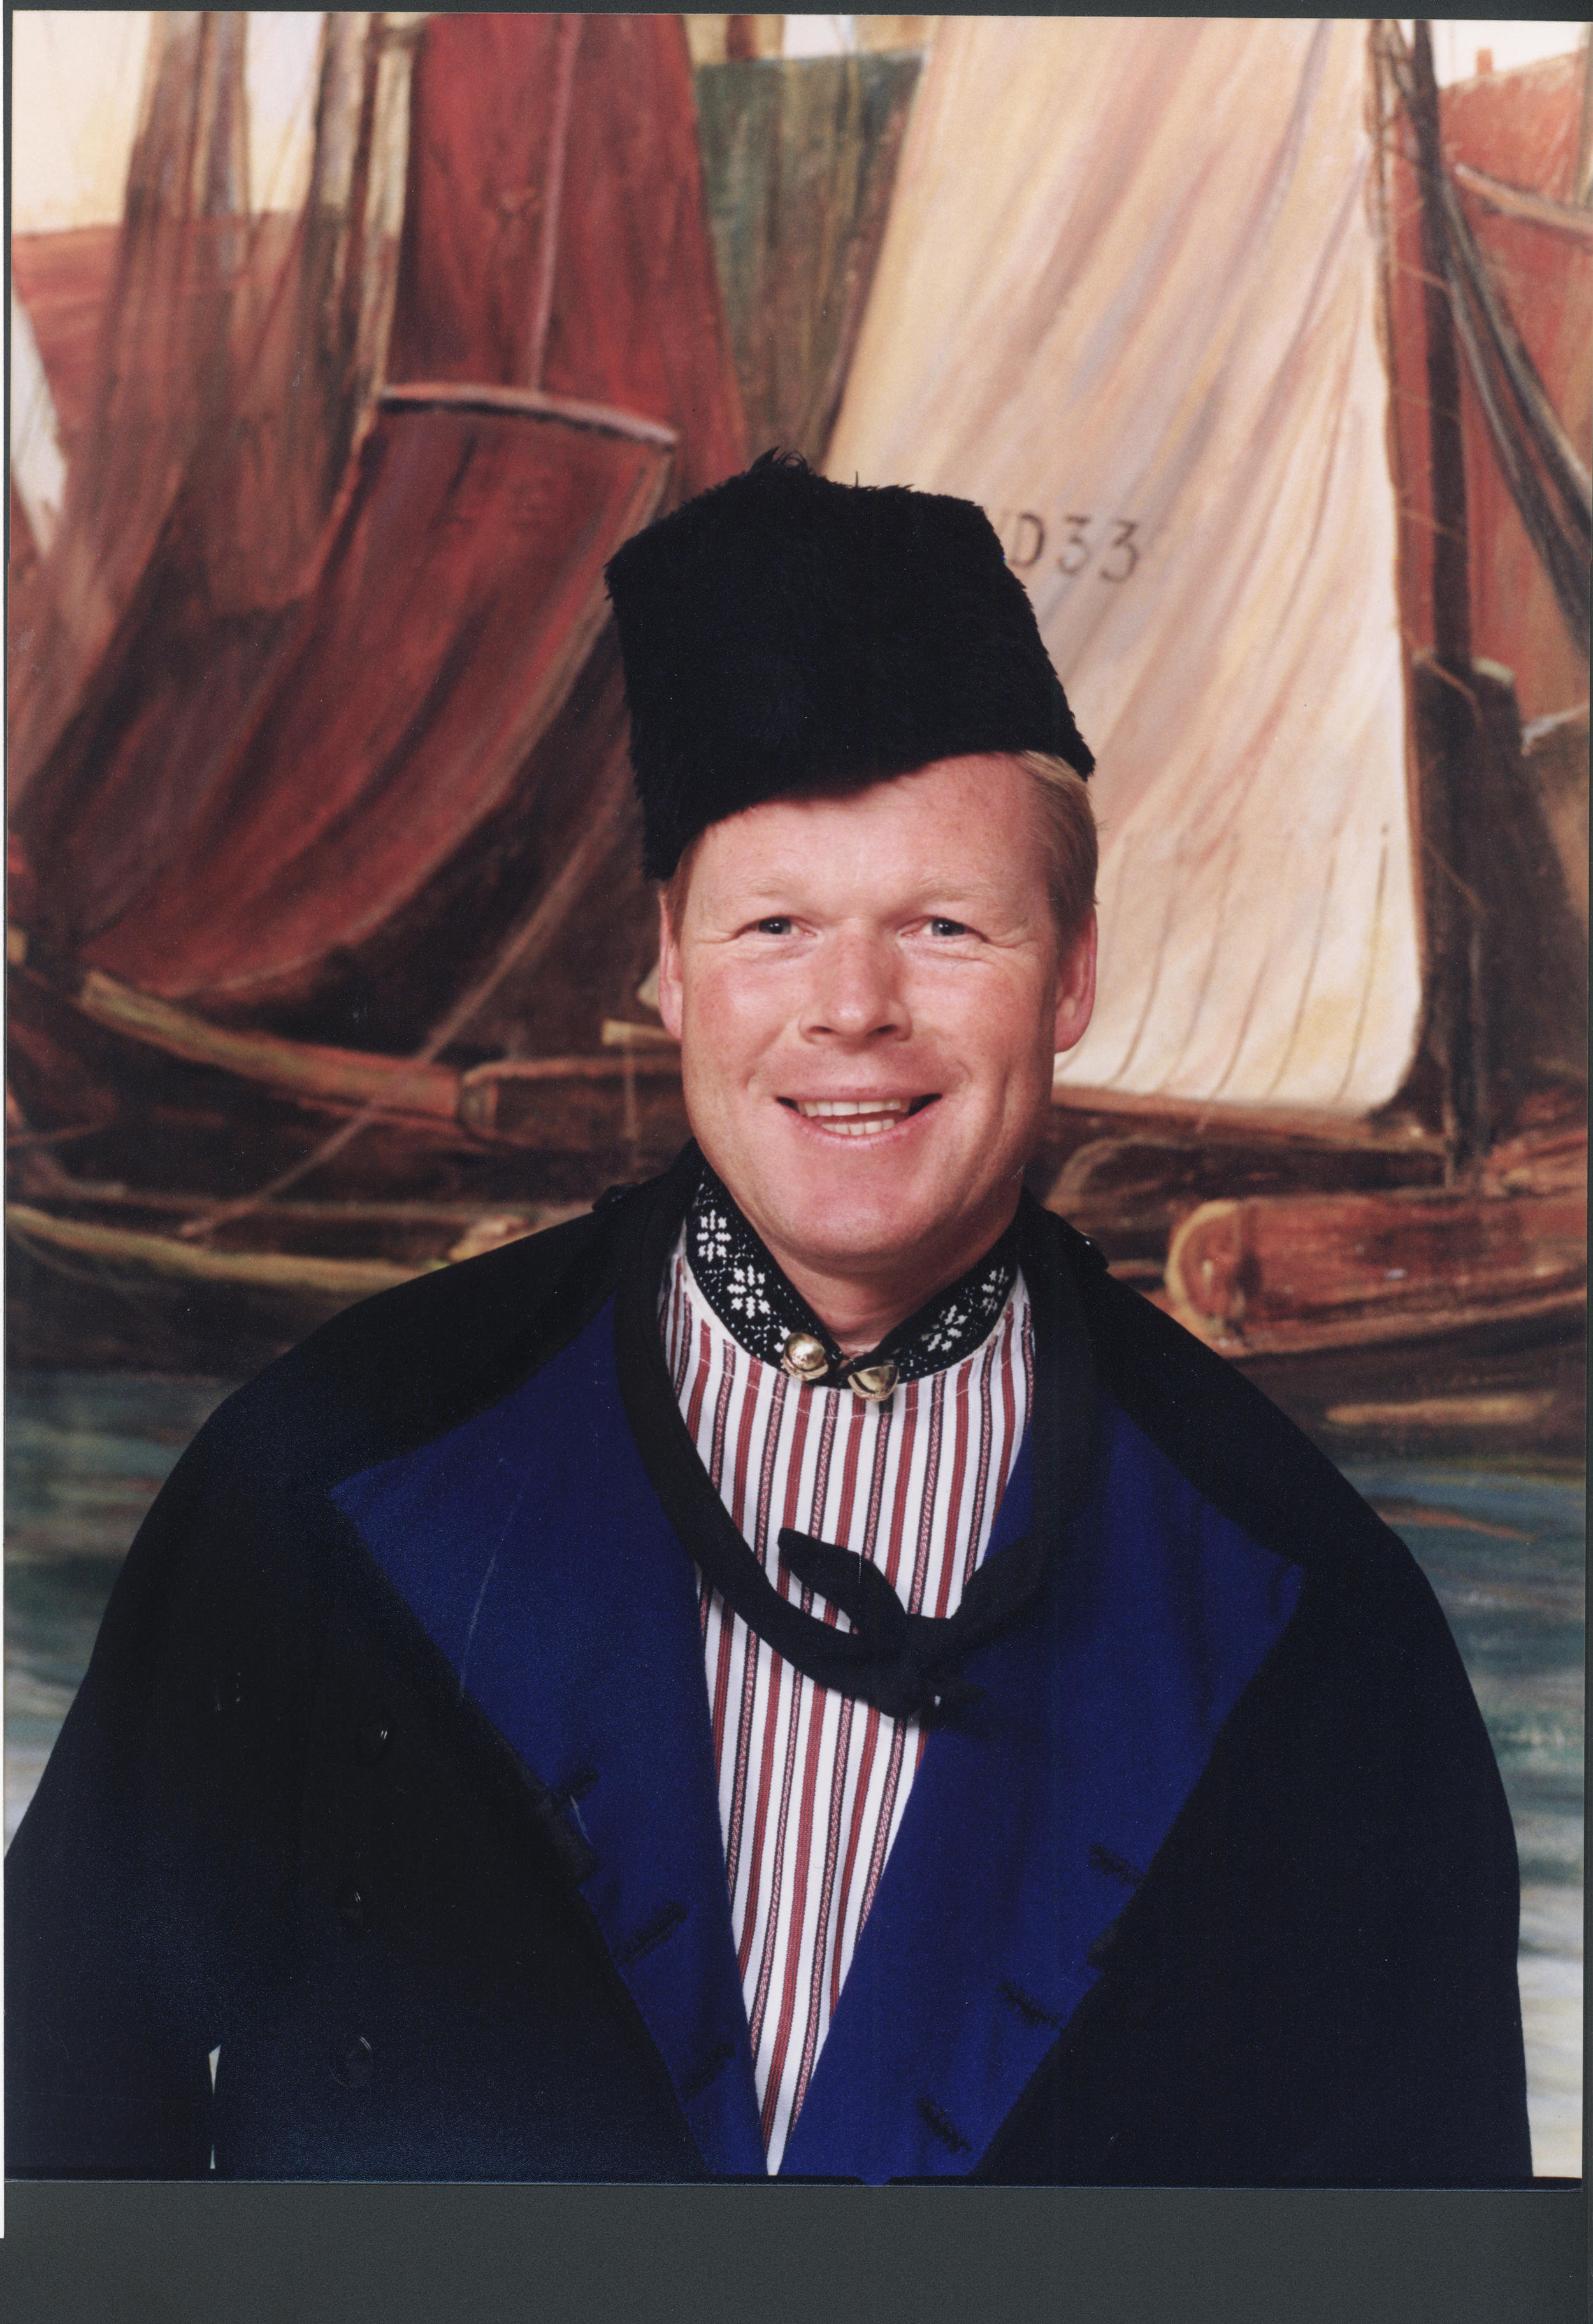 Ronald Koeman in Volendamse klederdracht